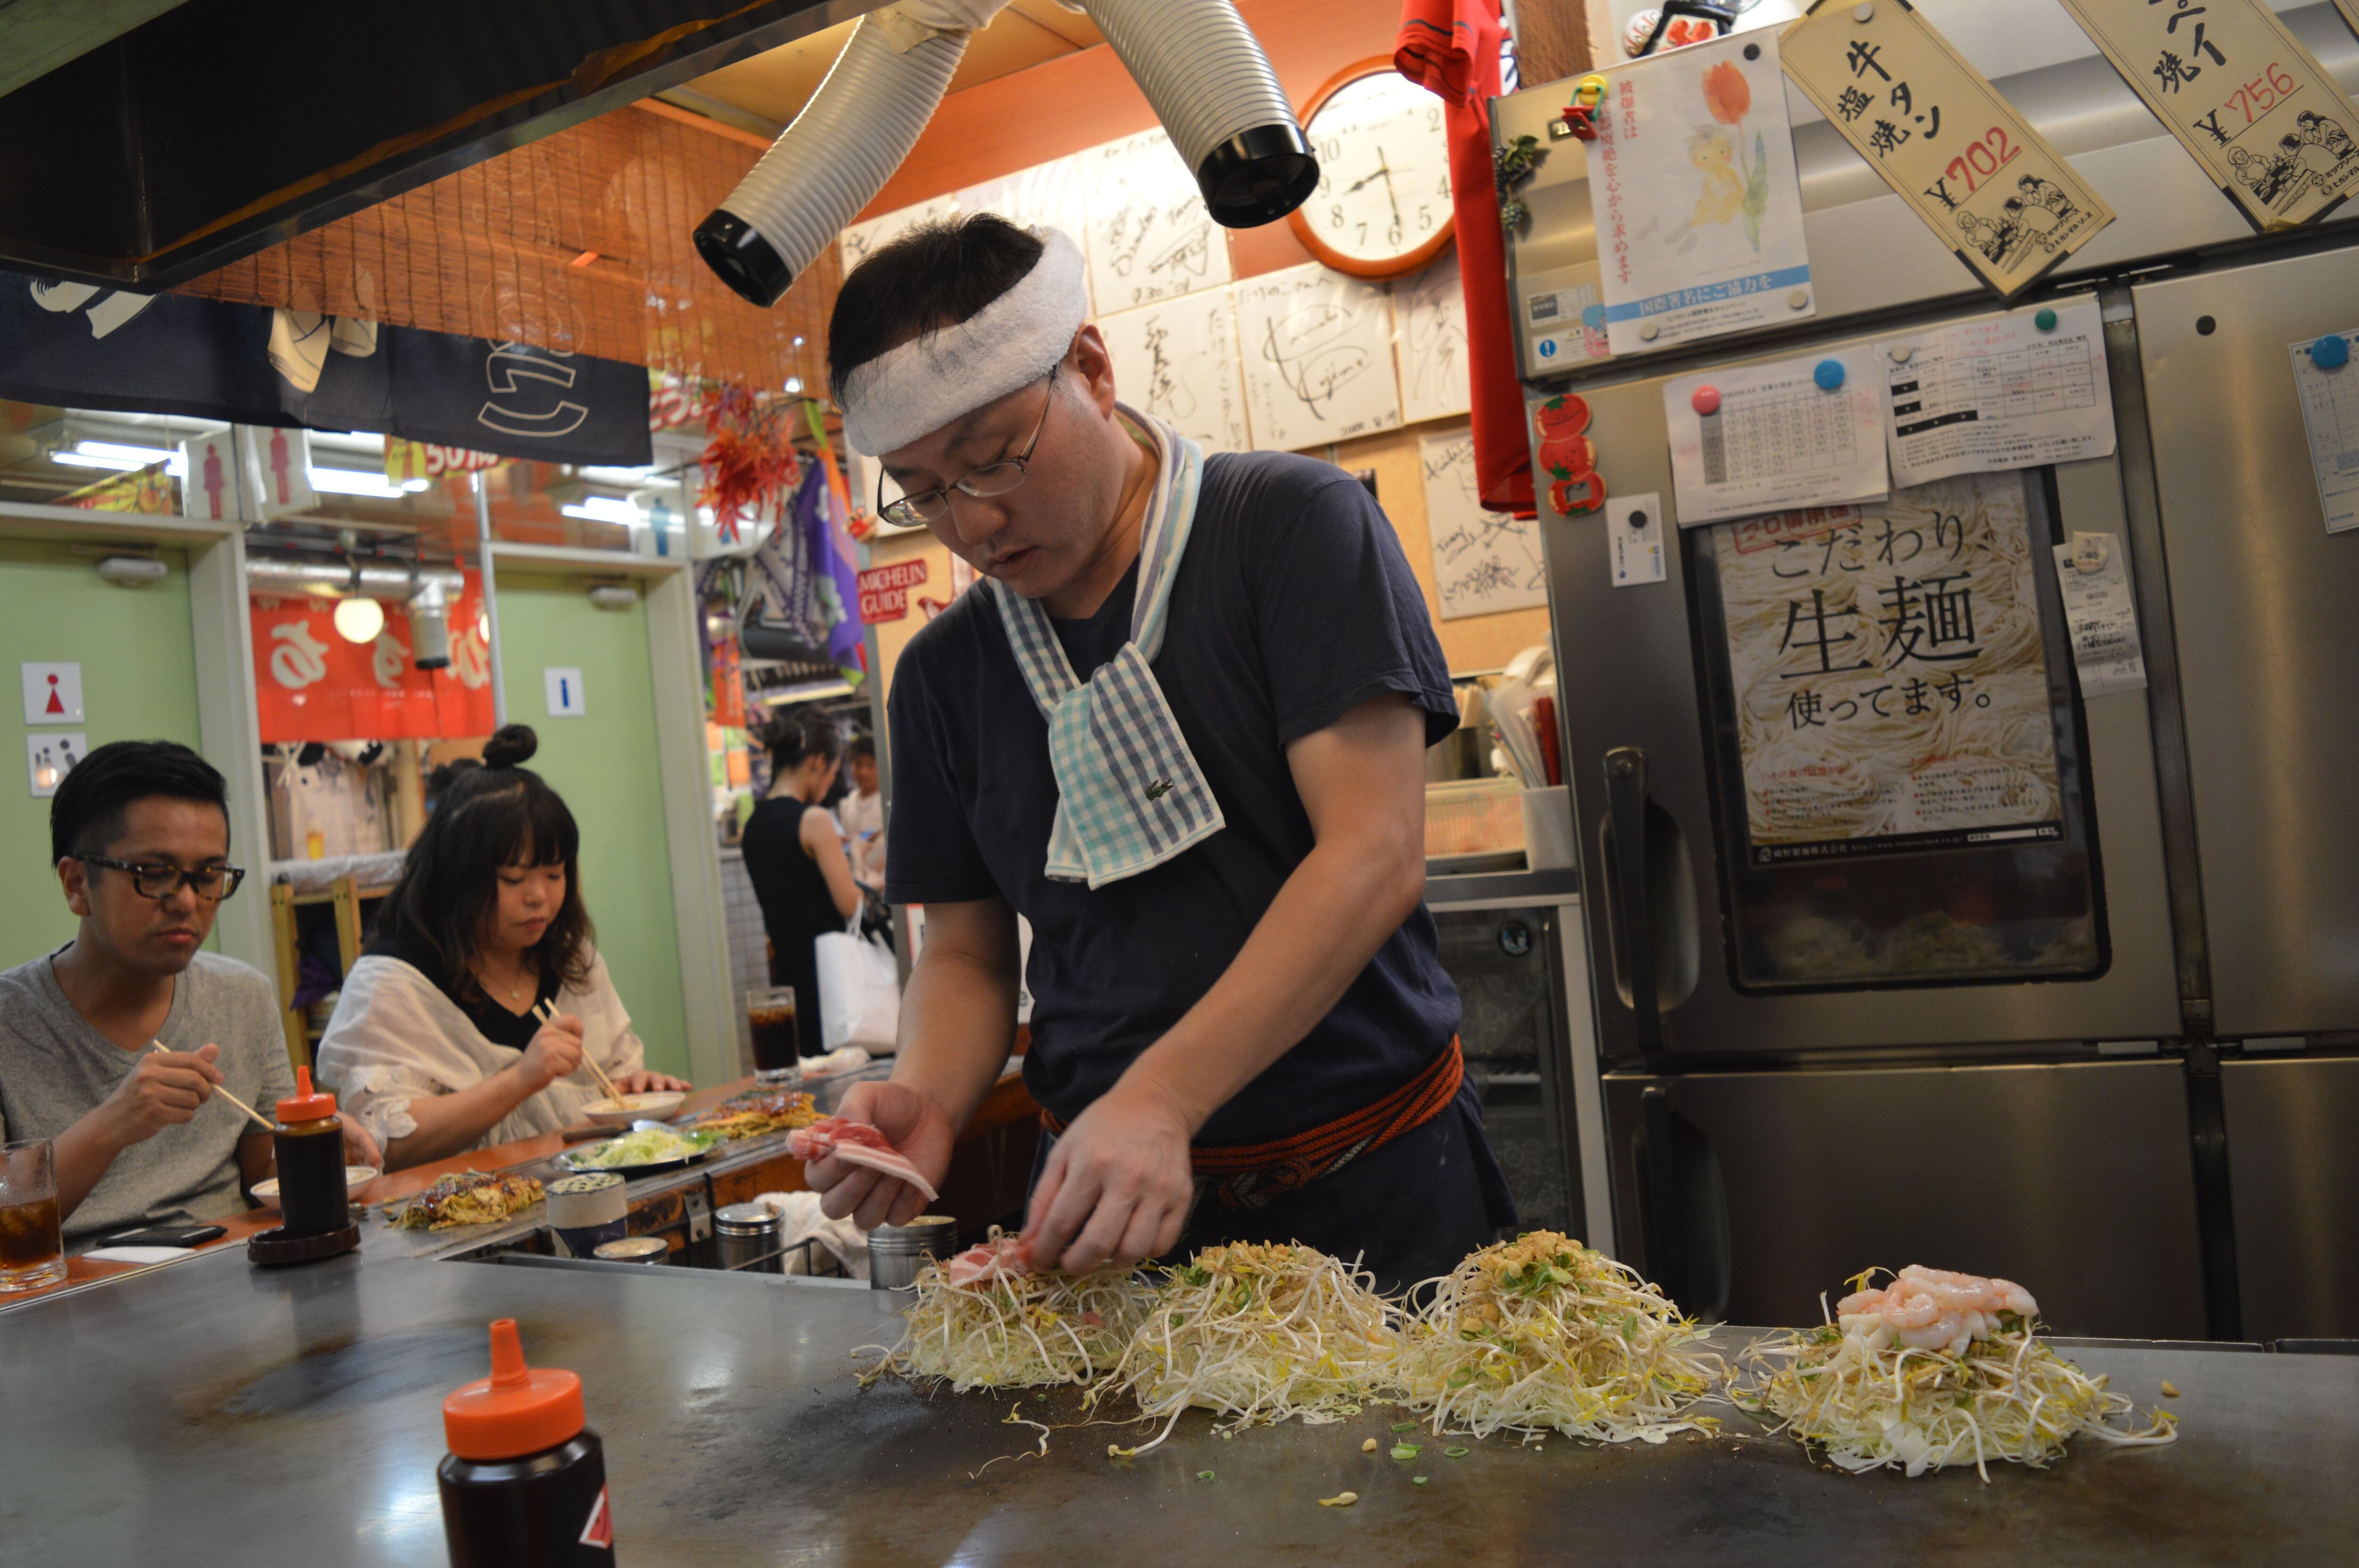 El cocinero va colocando los ingredientes del okonomiyaki en un restaurante de Hiroshima.